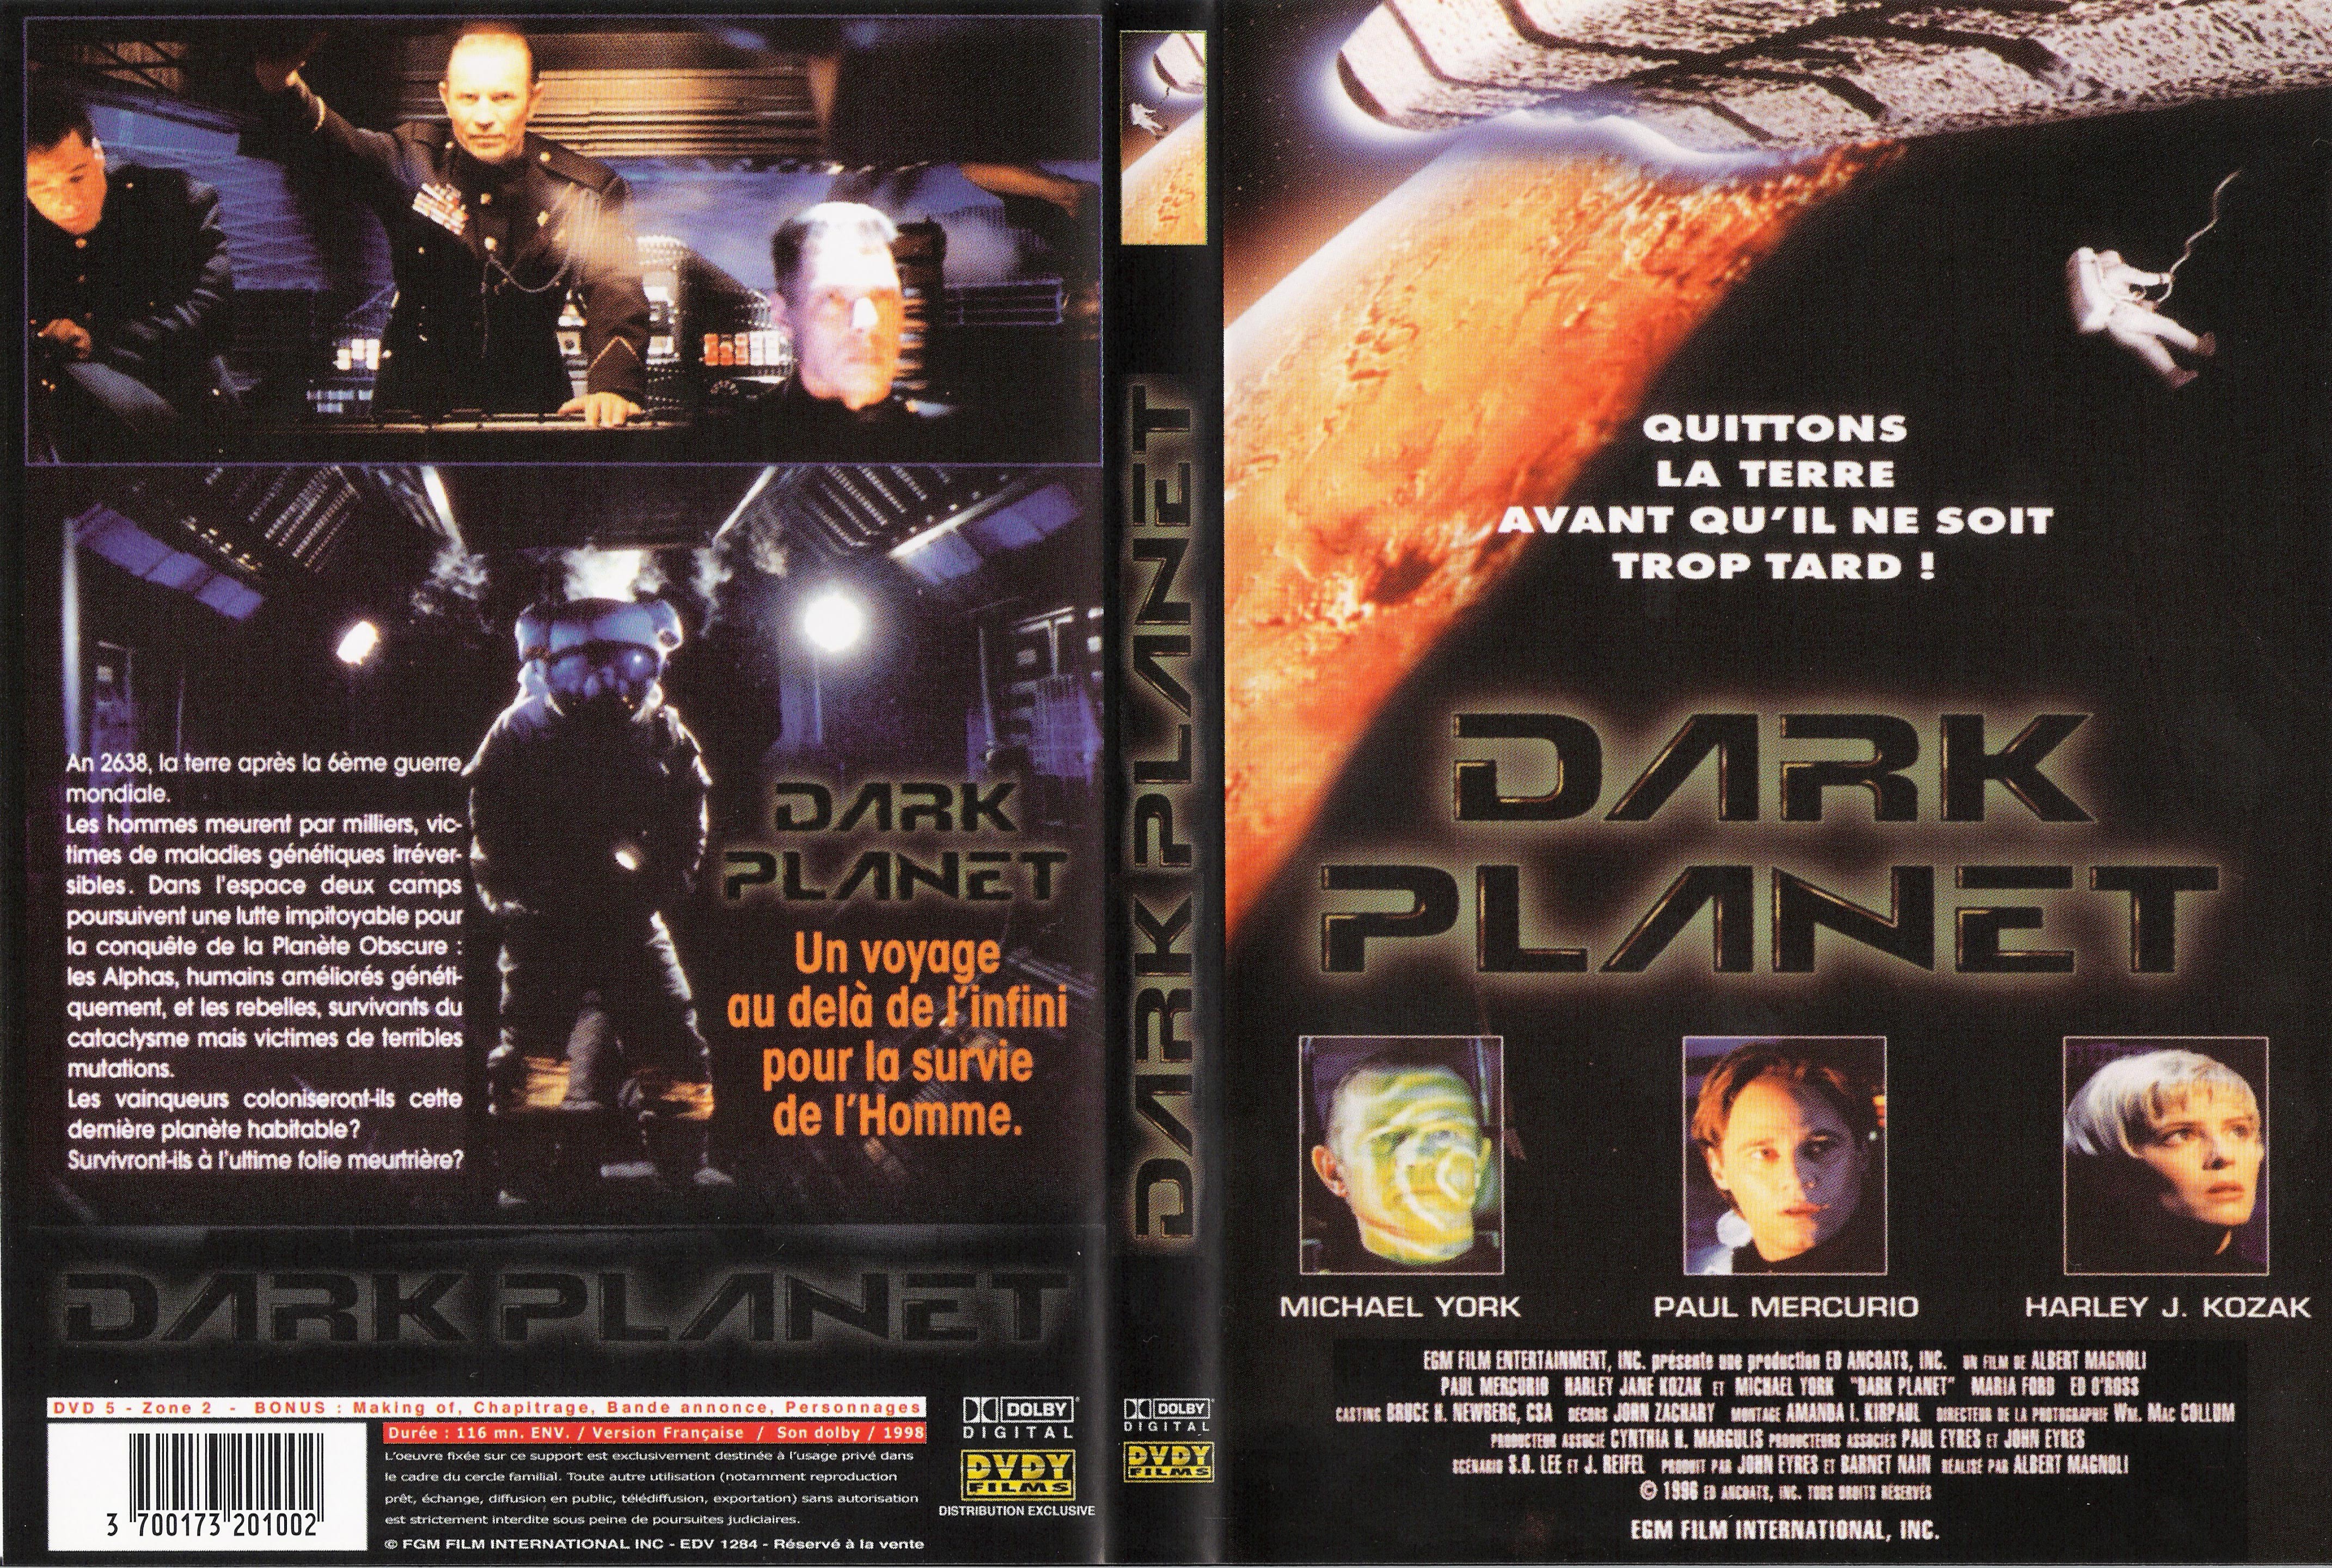 Jaquette DVD Dark planet